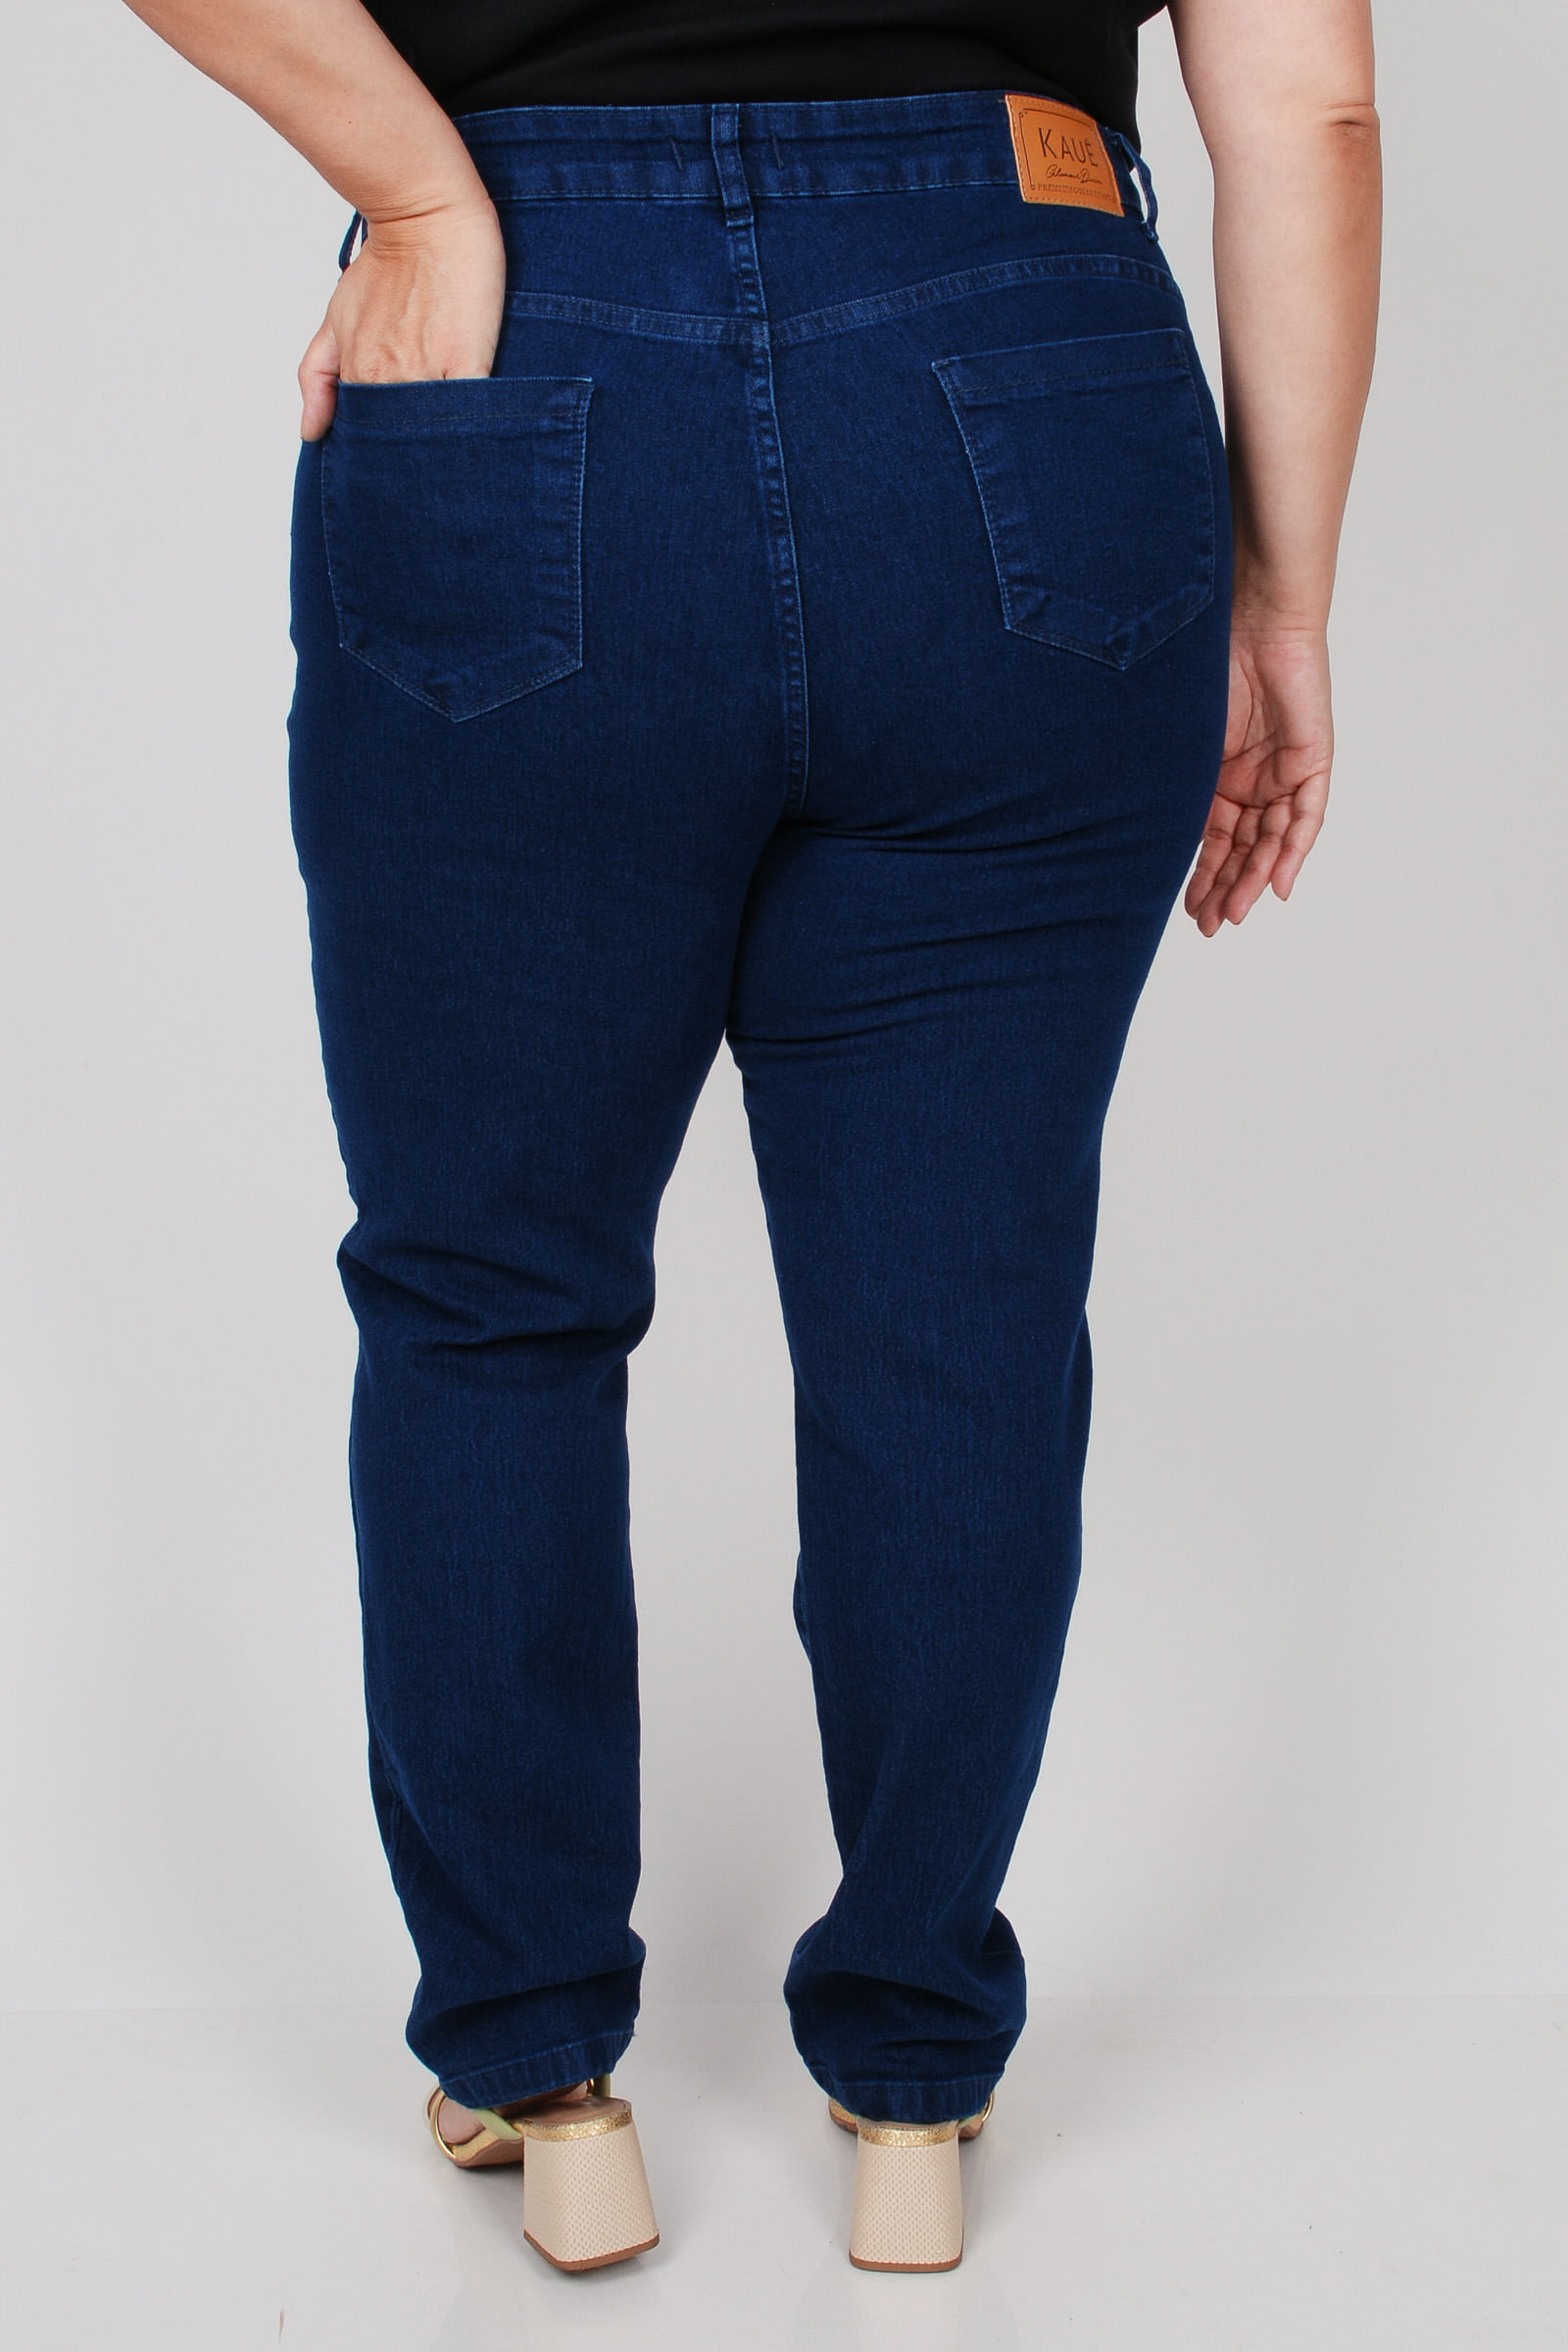 Calca-reta-jeans-feminina-plus-size_0102_4